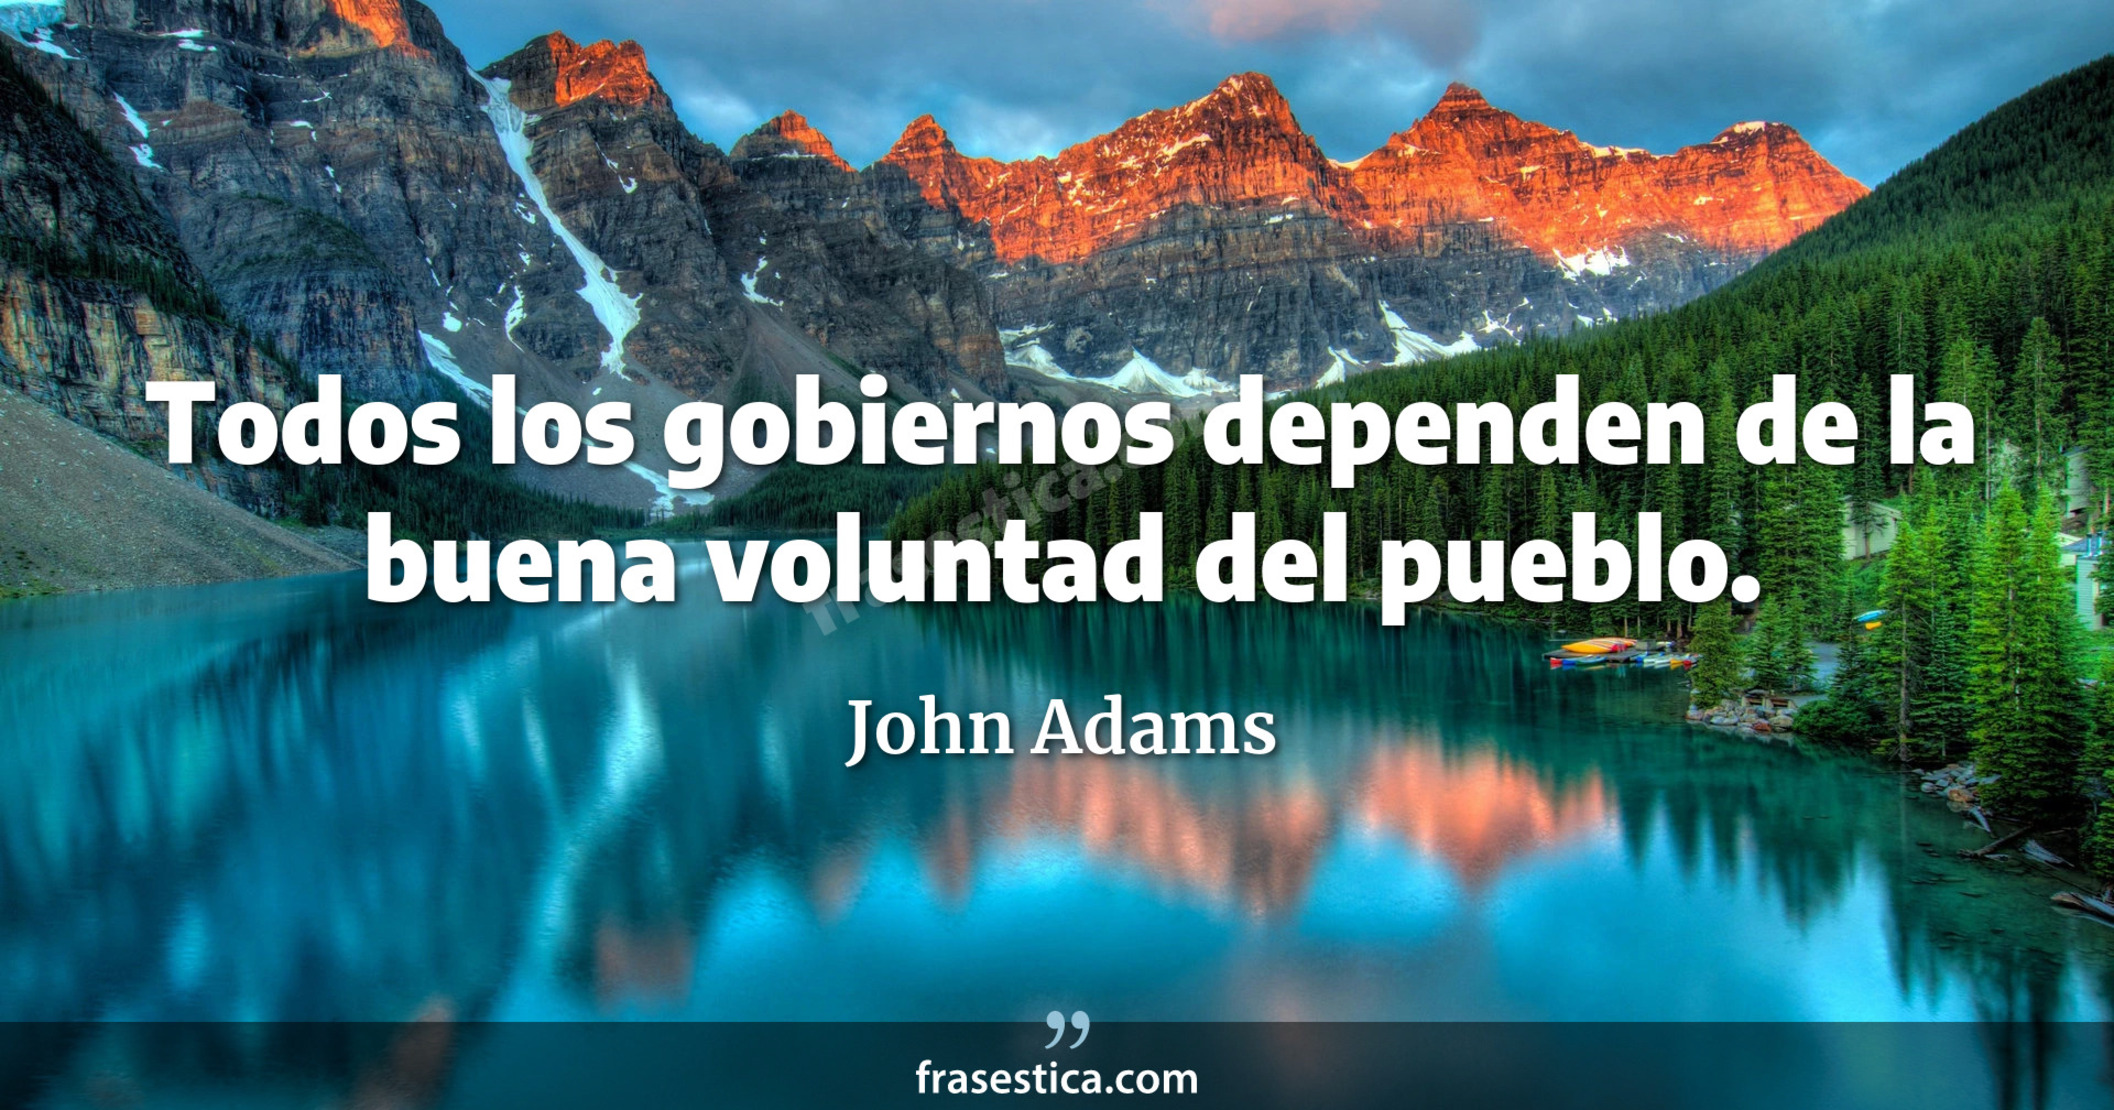 Todos los gobiernos dependen de la buena voluntad del pueblo. - John Adams